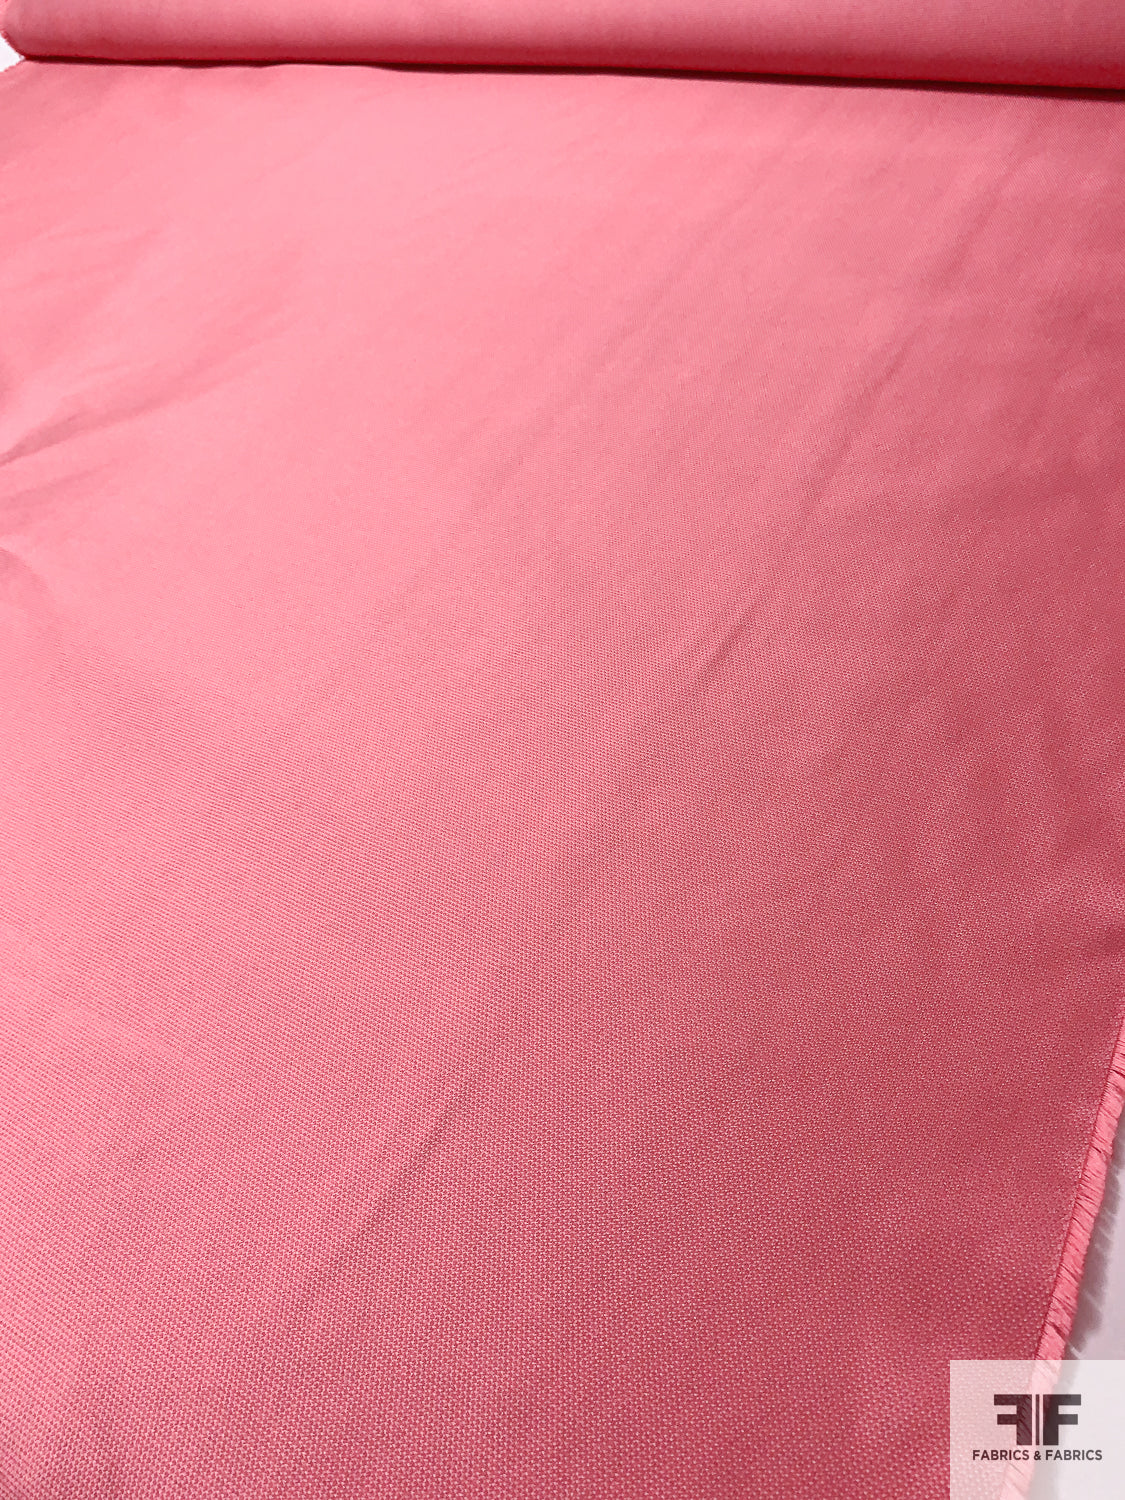 Made in Spain Pamella Roland Textured Pique-Zibeline - Rouge Pink